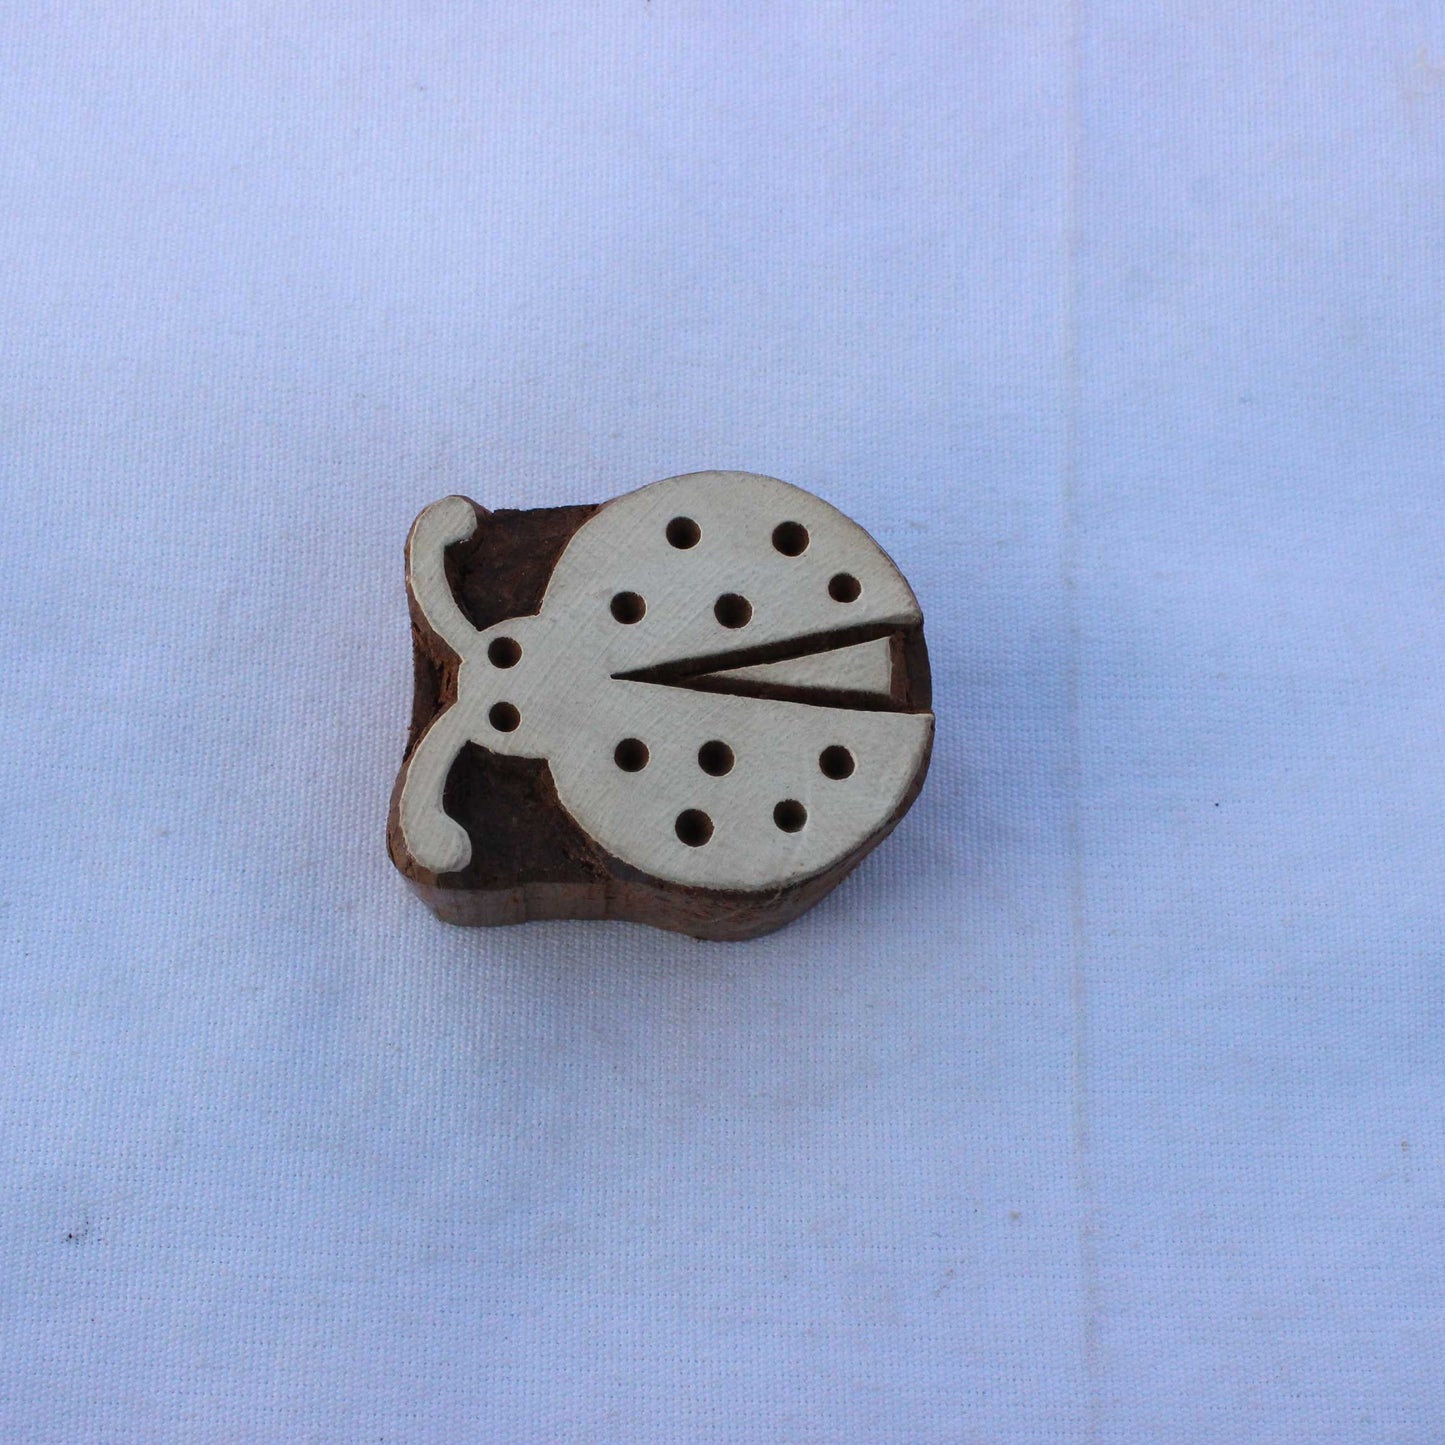 Kids Craft Block Print Stamp Carve Block Print Stamp Ladybug Block Print Stamp Hand Carved Textile Block For Printing Insect Soap Stamp